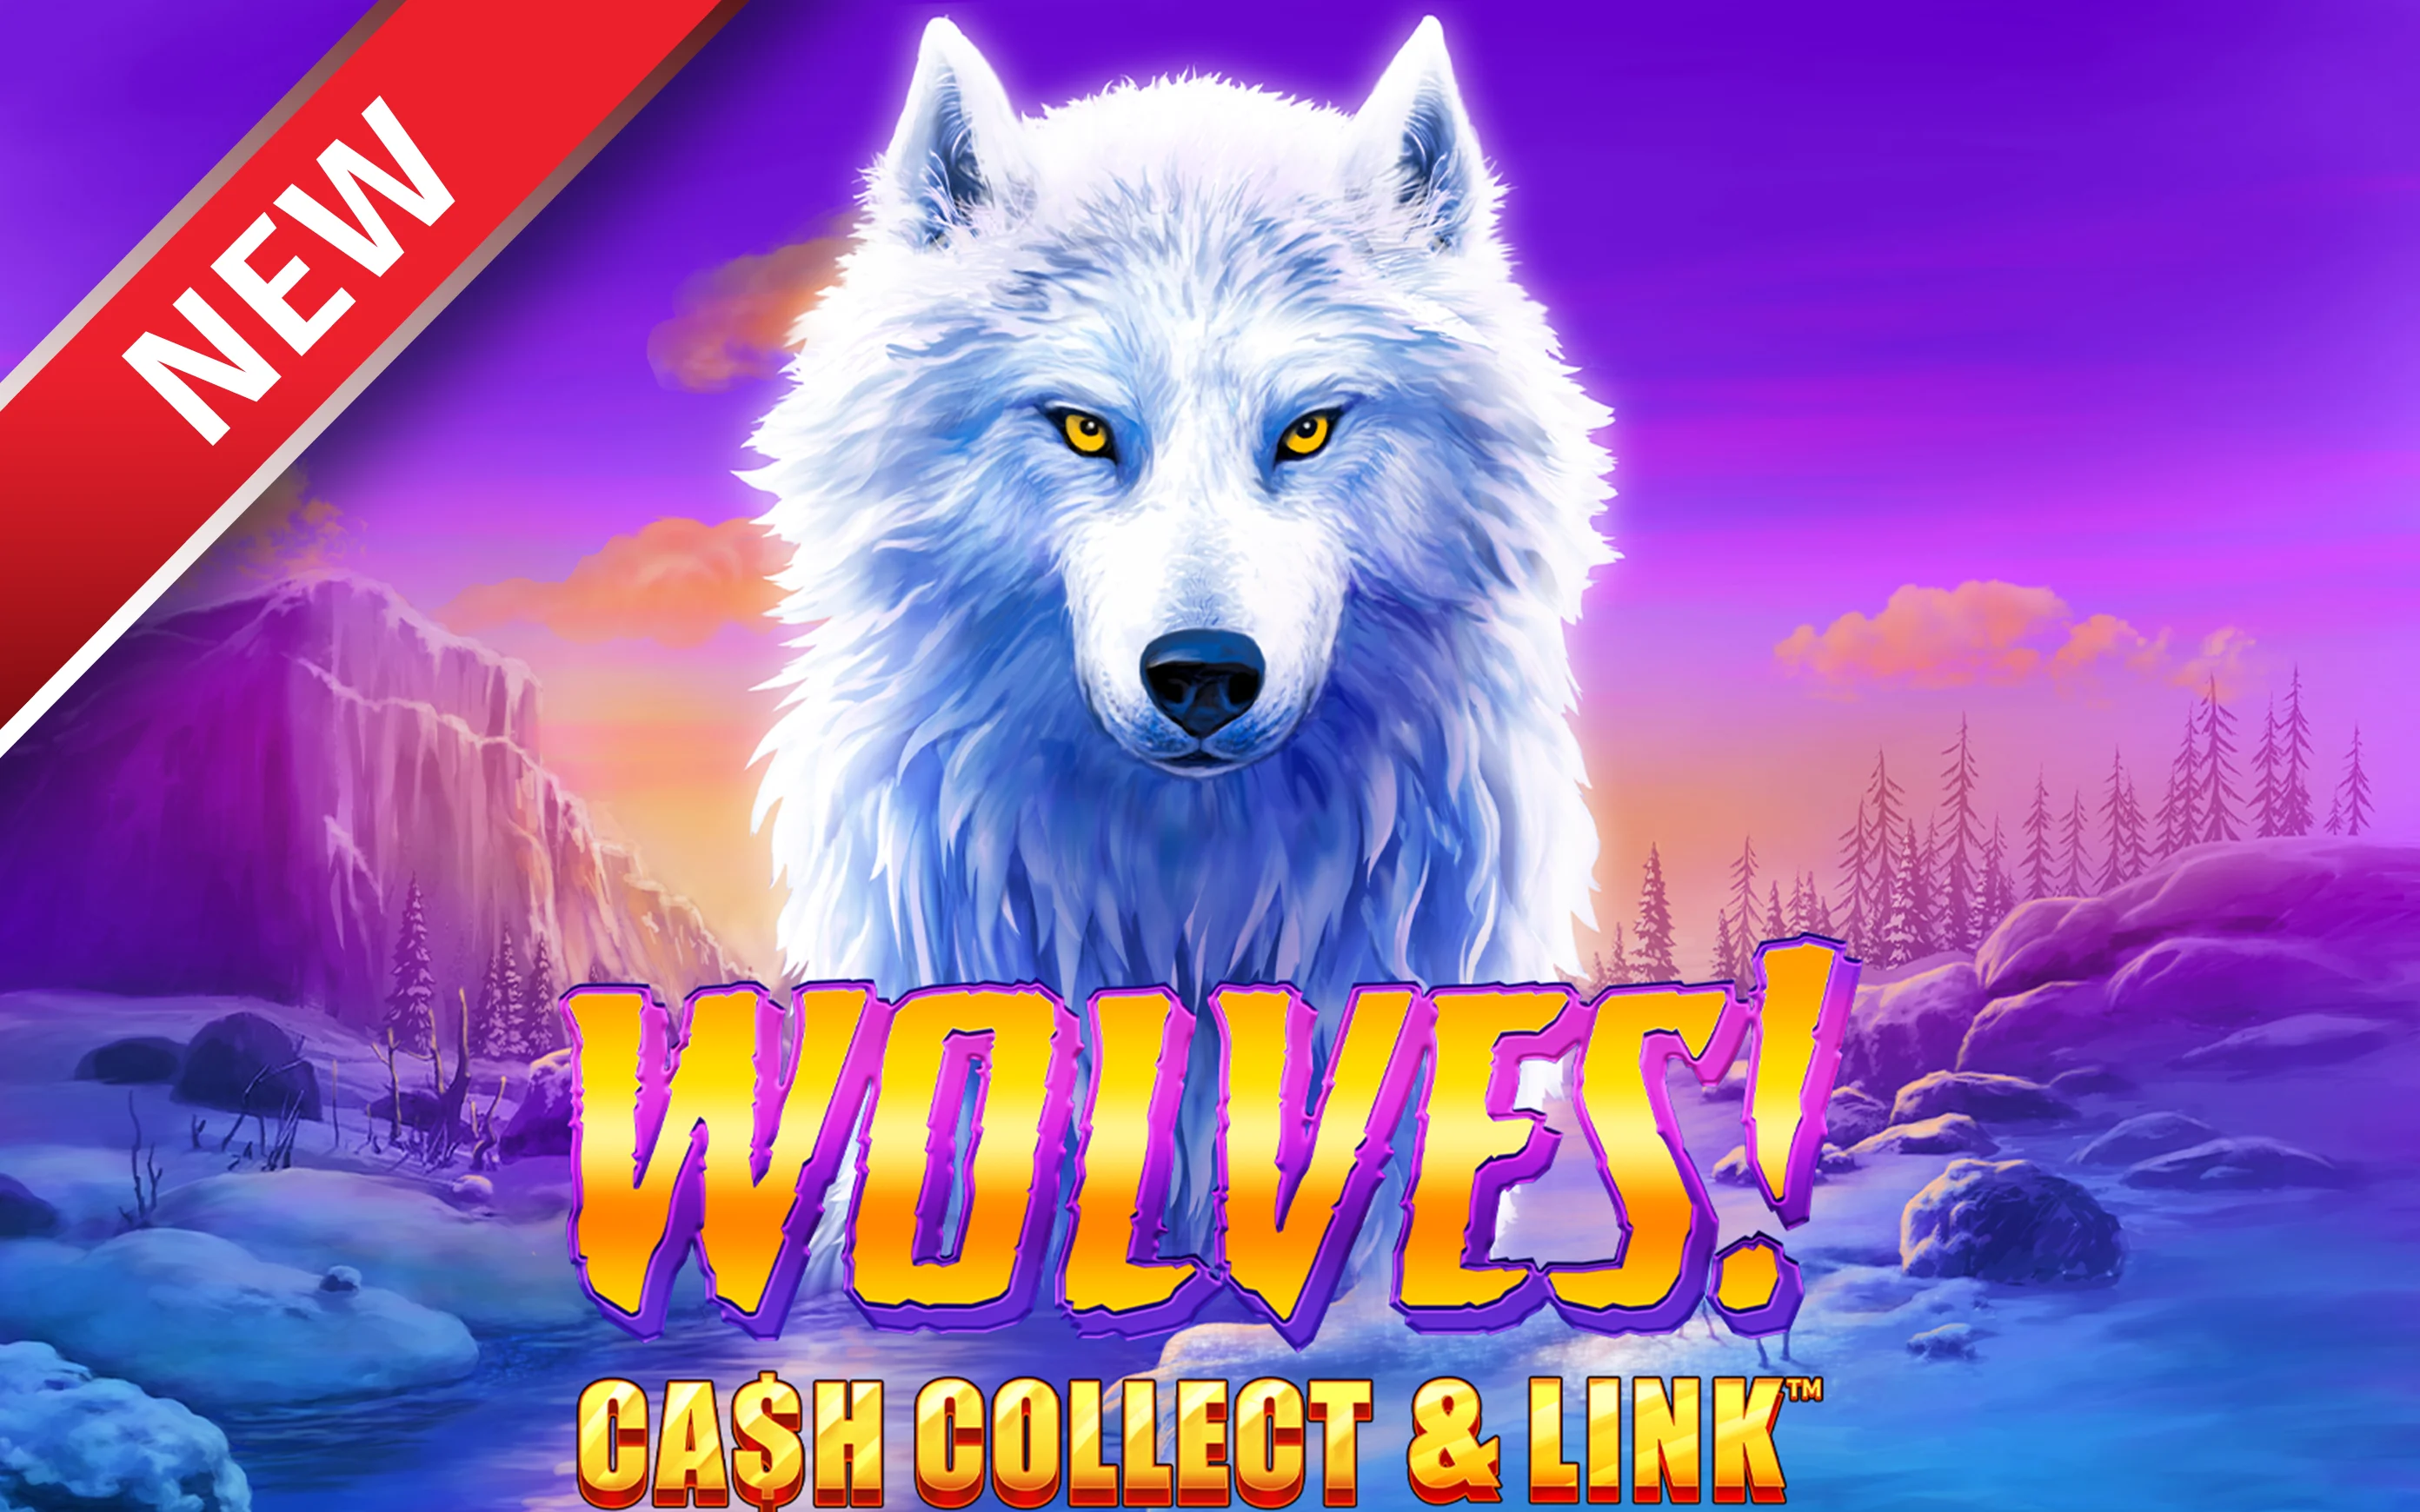 Jouer à Wolves! Cash Collect & Link™ sur le casino en ligne Starcasino.be